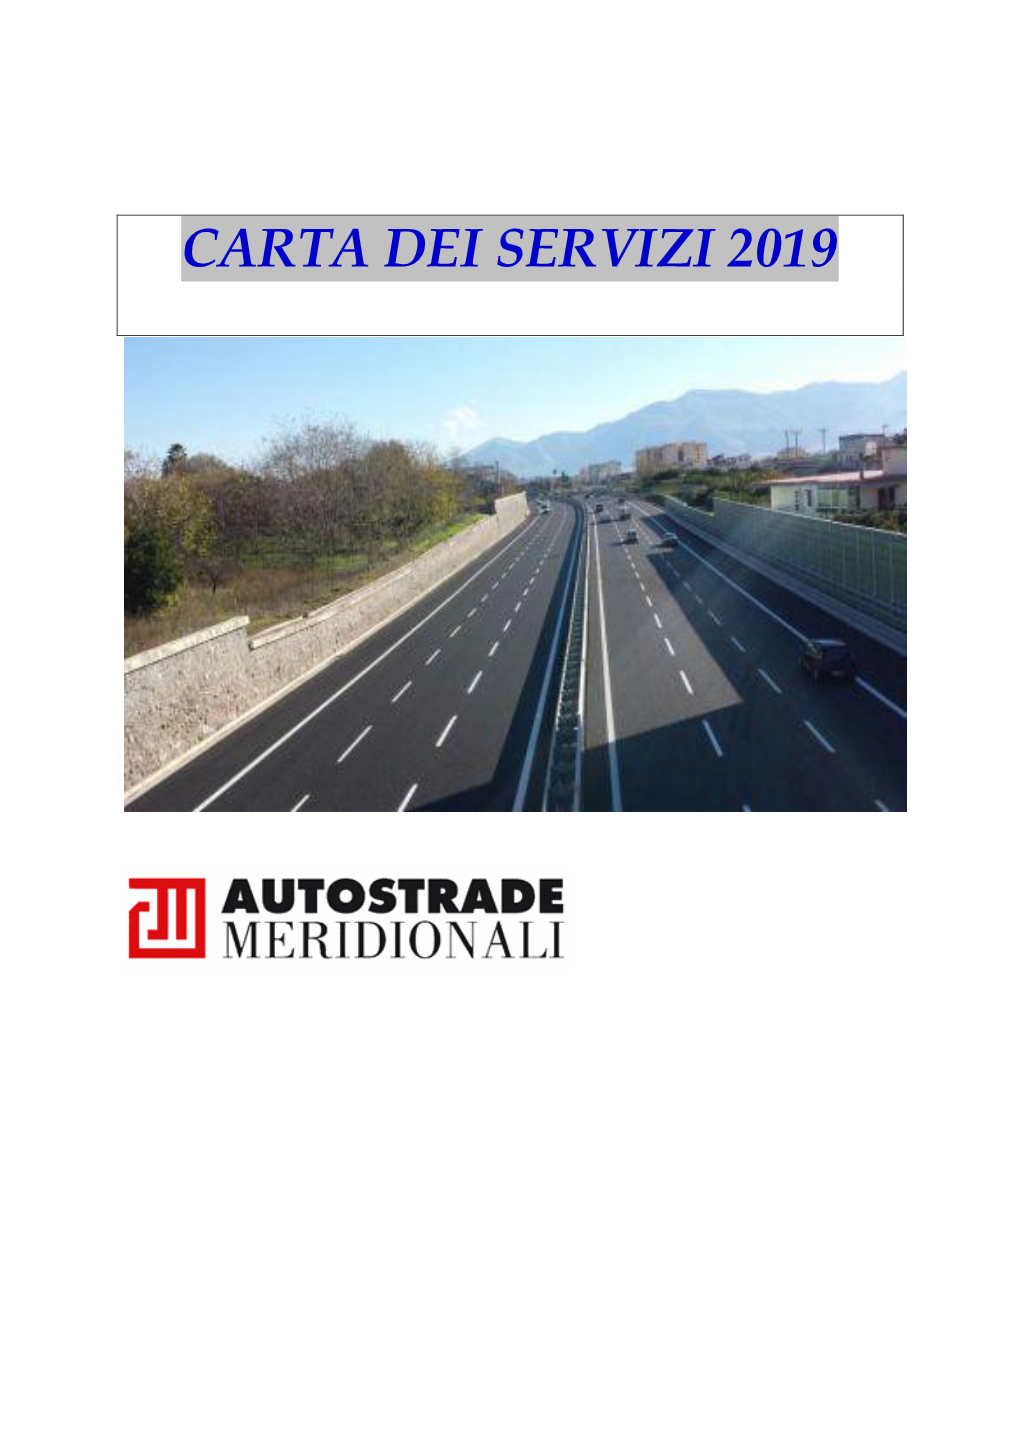 CARTA DEI SERVIZI 2019 Di Autostrade Meridionali Spa